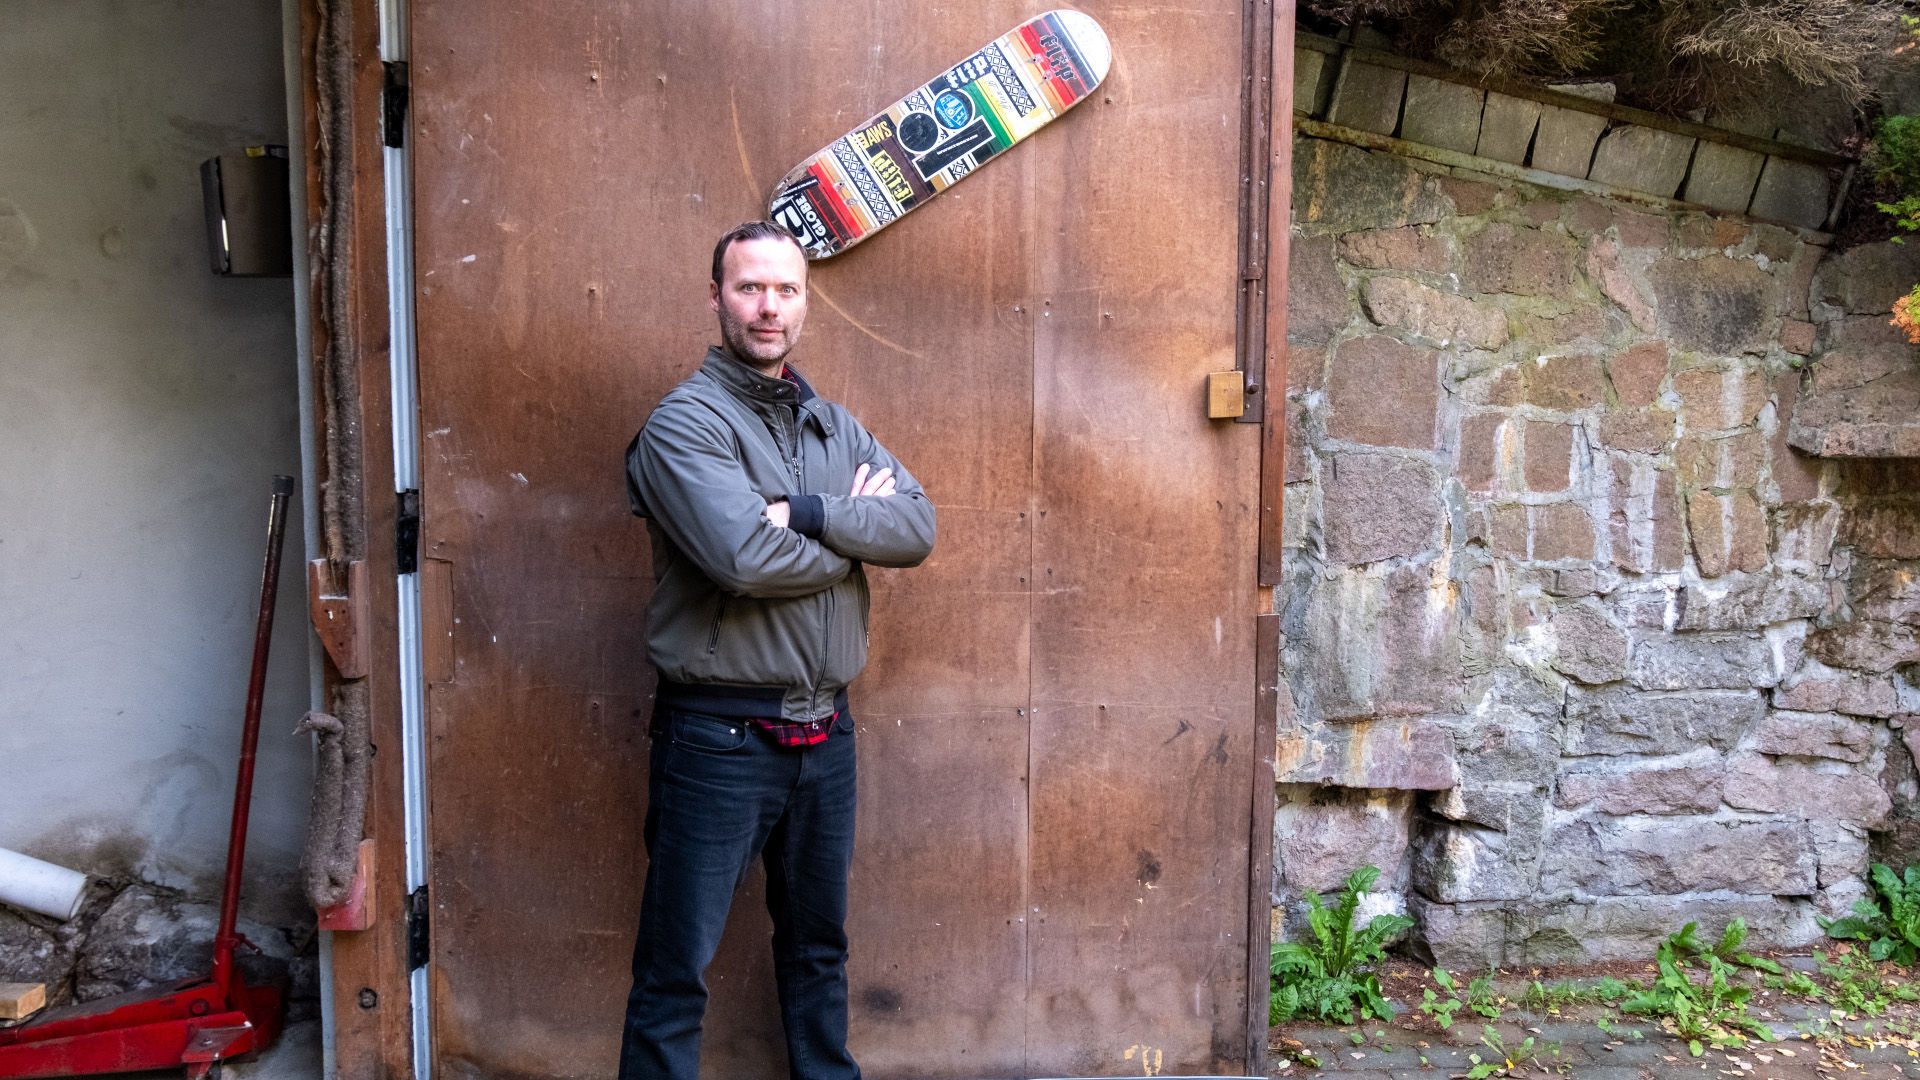 Tim står foran en garasjedør med et skateboard.